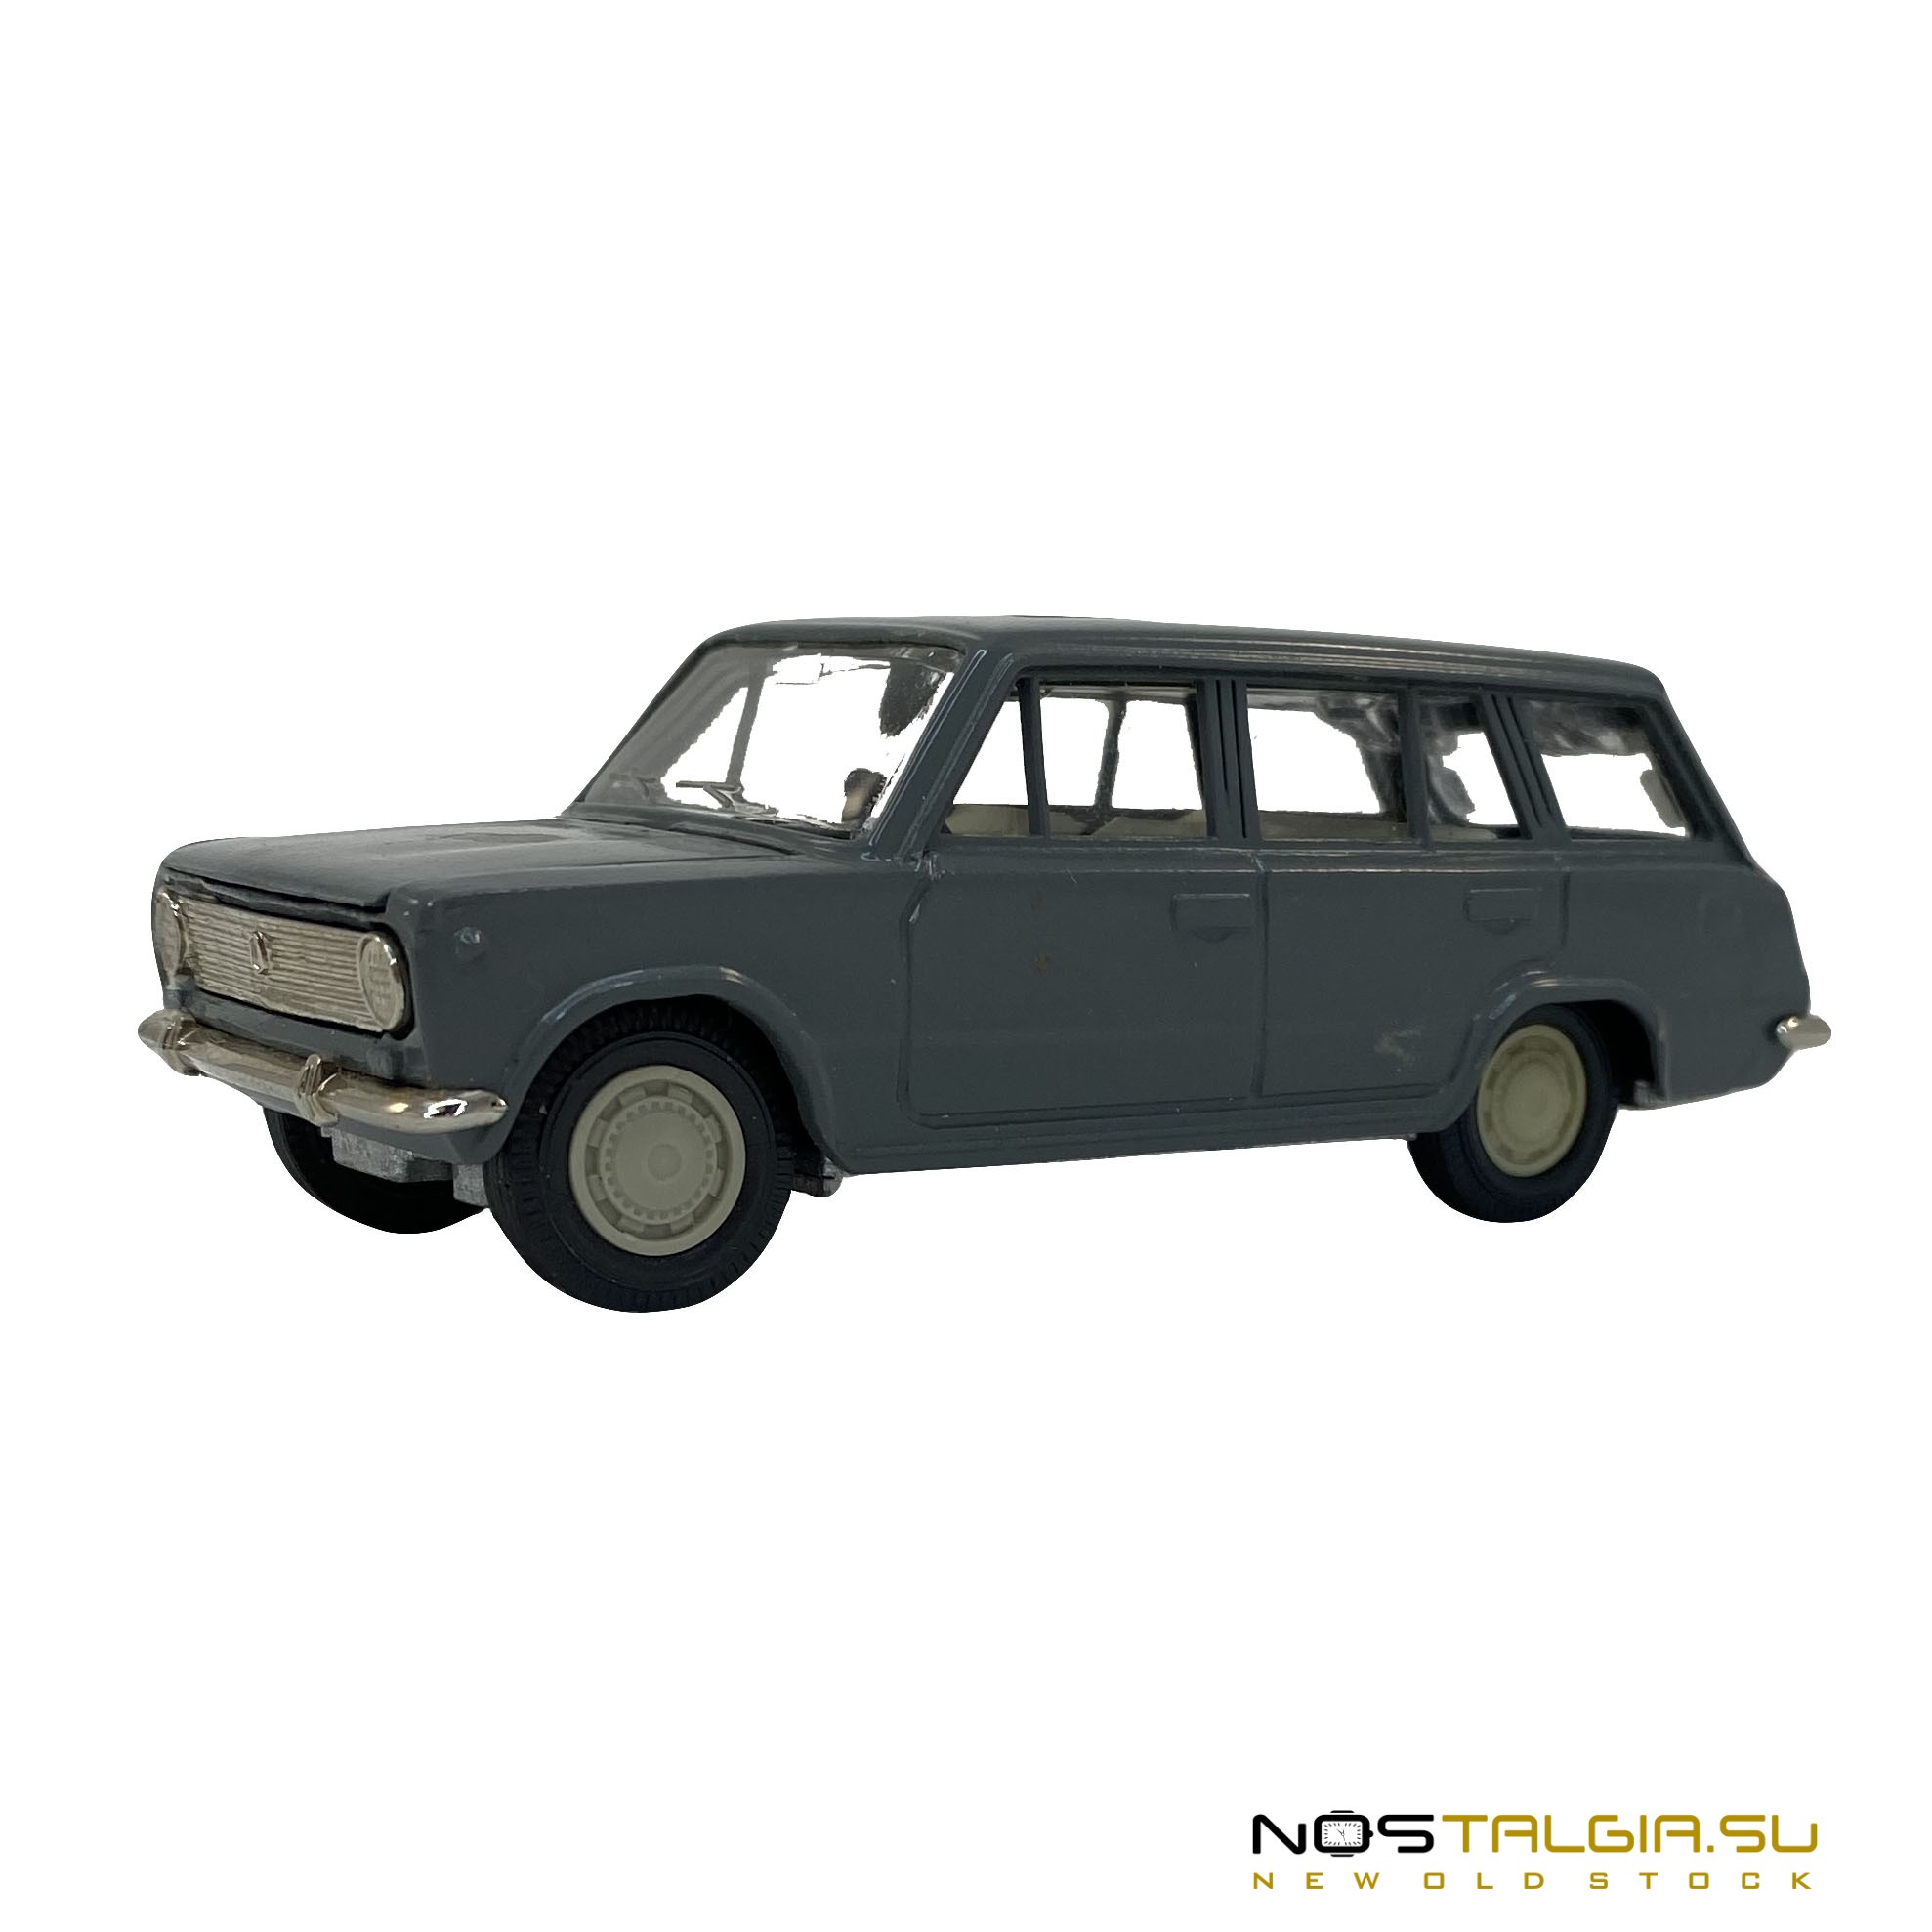 Модель автомобиля ВАЗ 2102, масштаб 1:43, период СССР, состояние отличное 